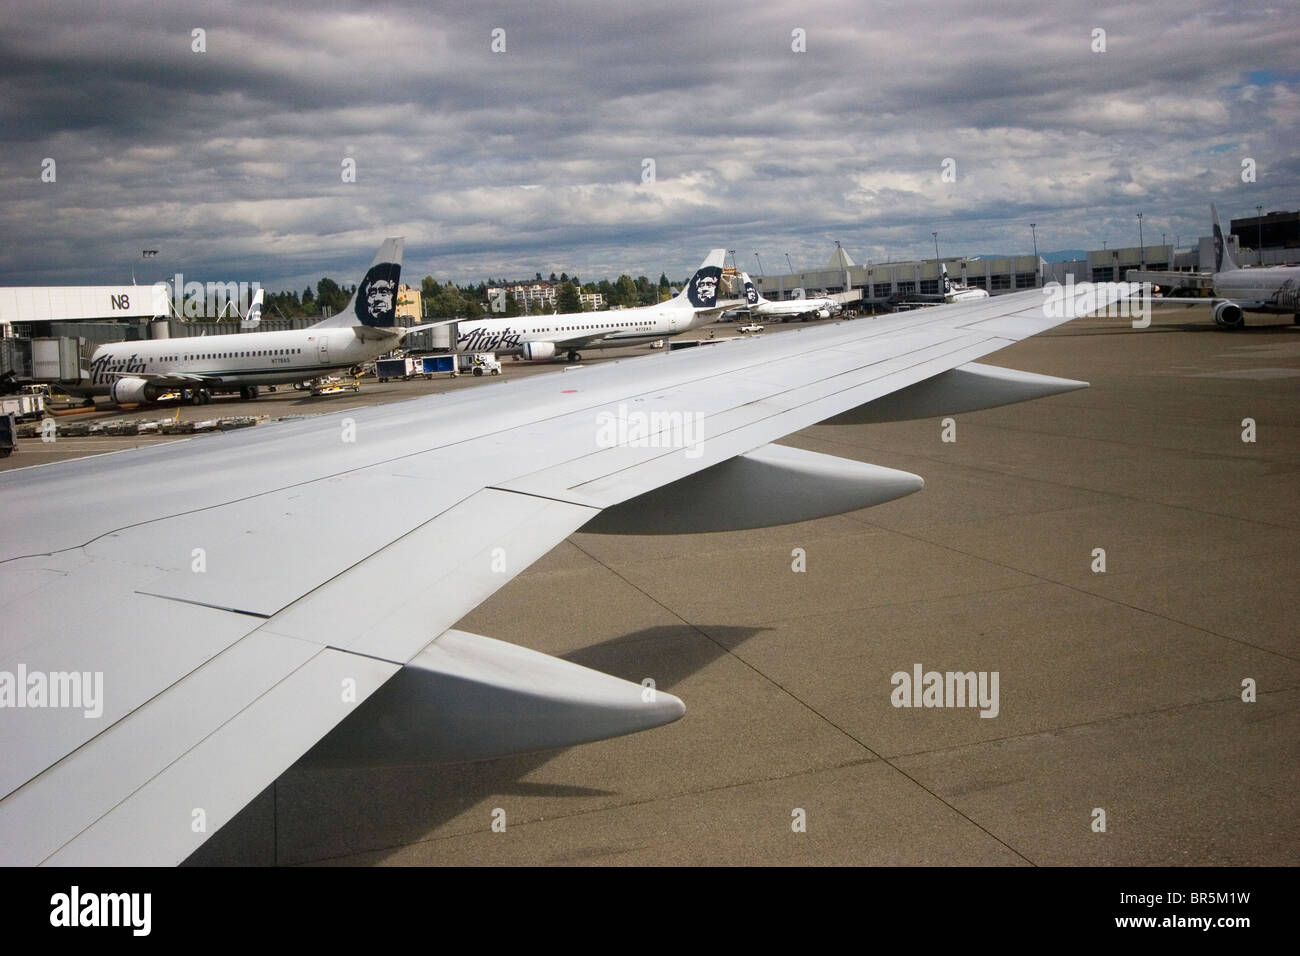 Flughafen Asphalt, Schürze, mit mehreren Alaska Airlines Flugzeuge über Flugzeugflügel von einem anderen Flugzeug, Seattle Washington Stockfoto